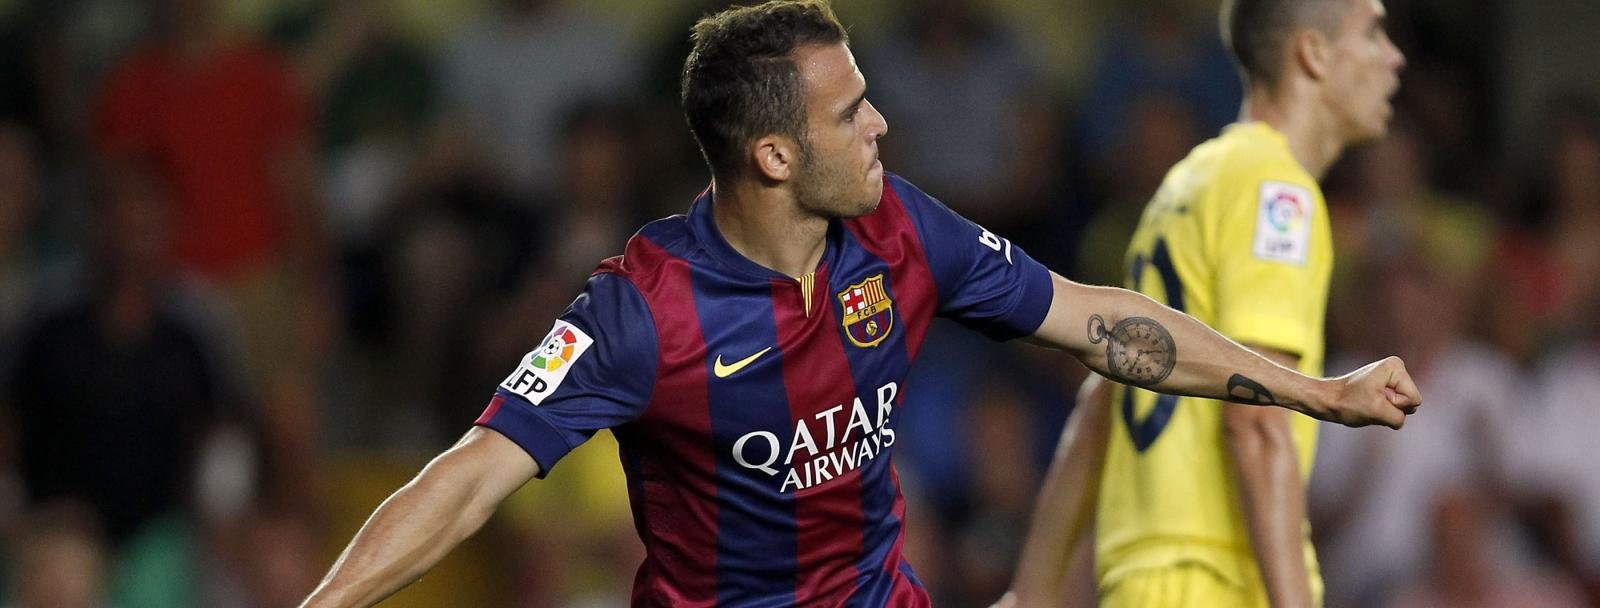 One to Watch: Barcelona forward Sandro Ramirez